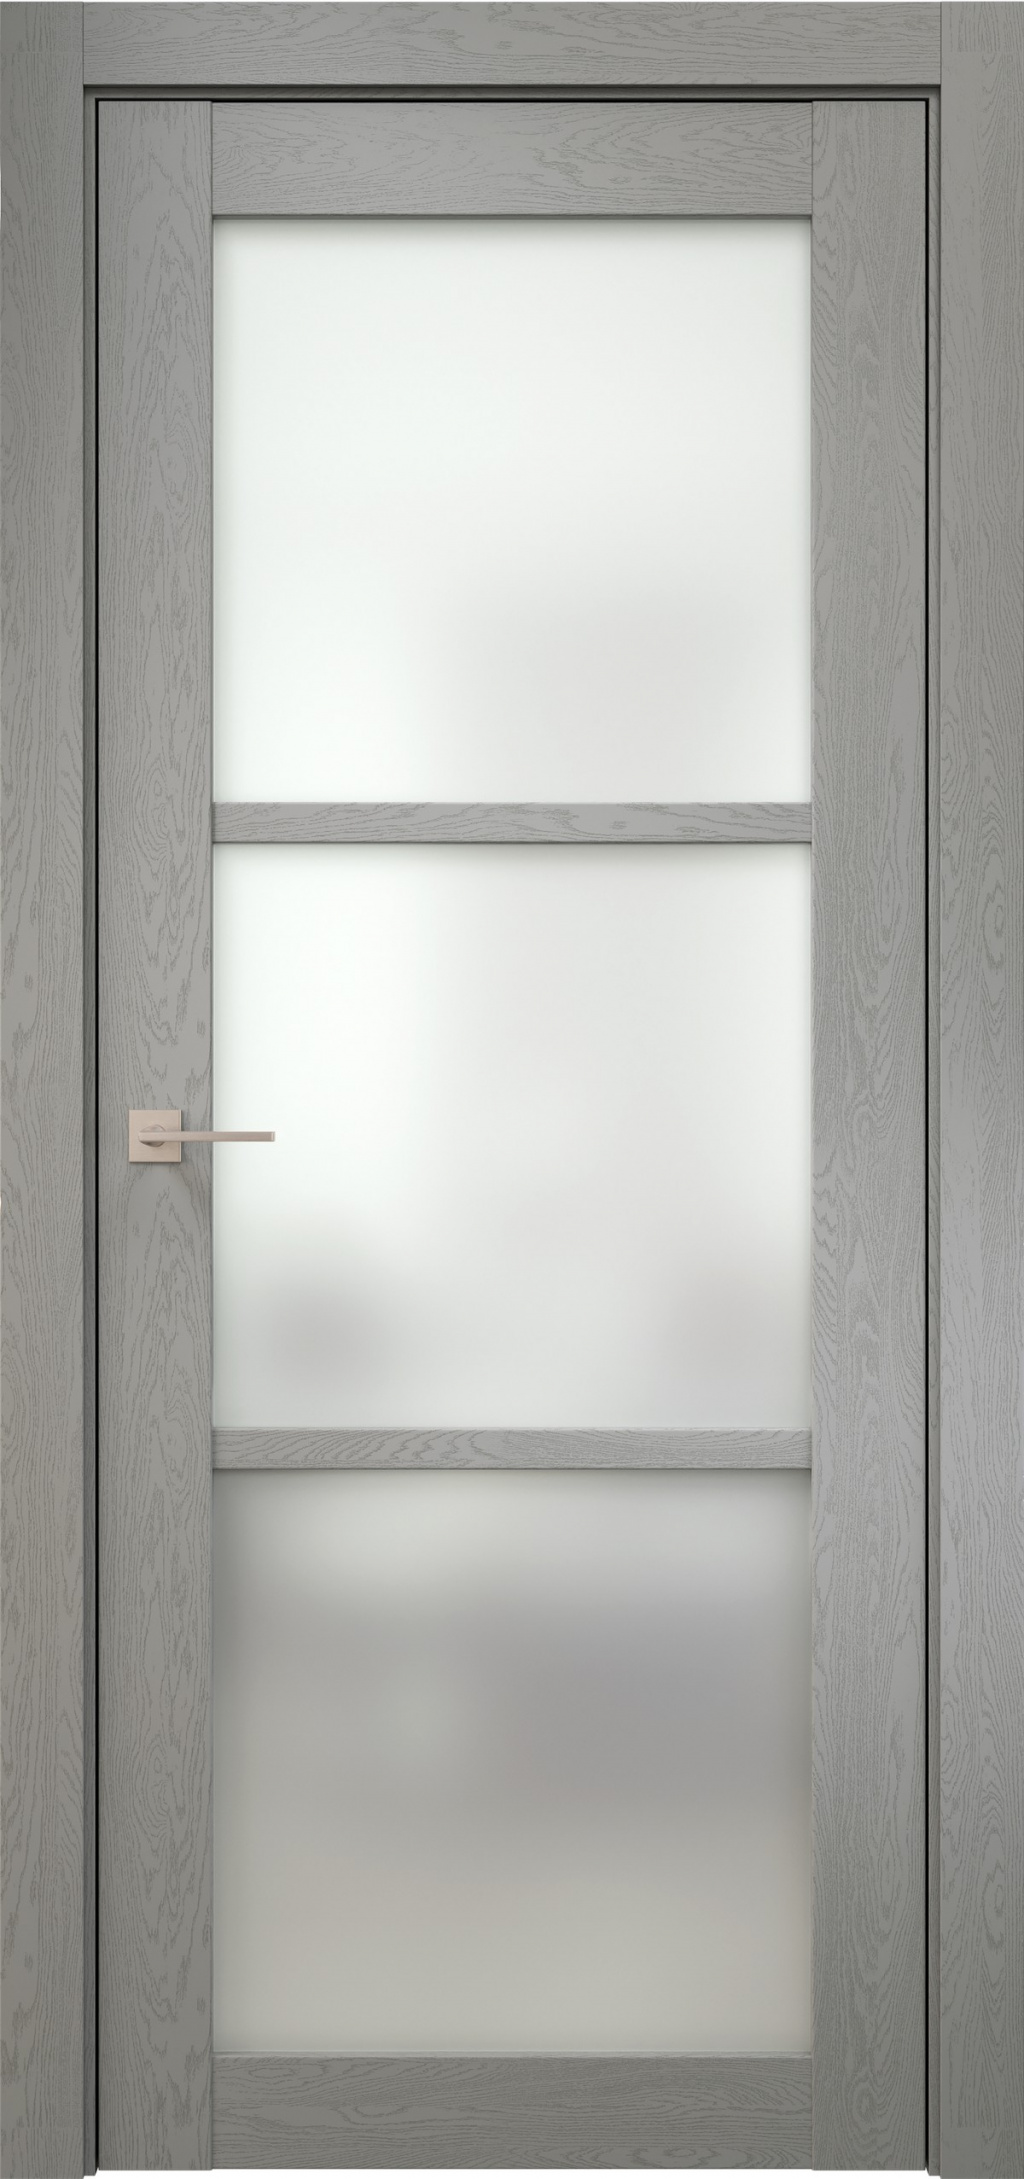 Prestige Межкомнатная дверь V 4 ДО, арт. 11806 - фото №1